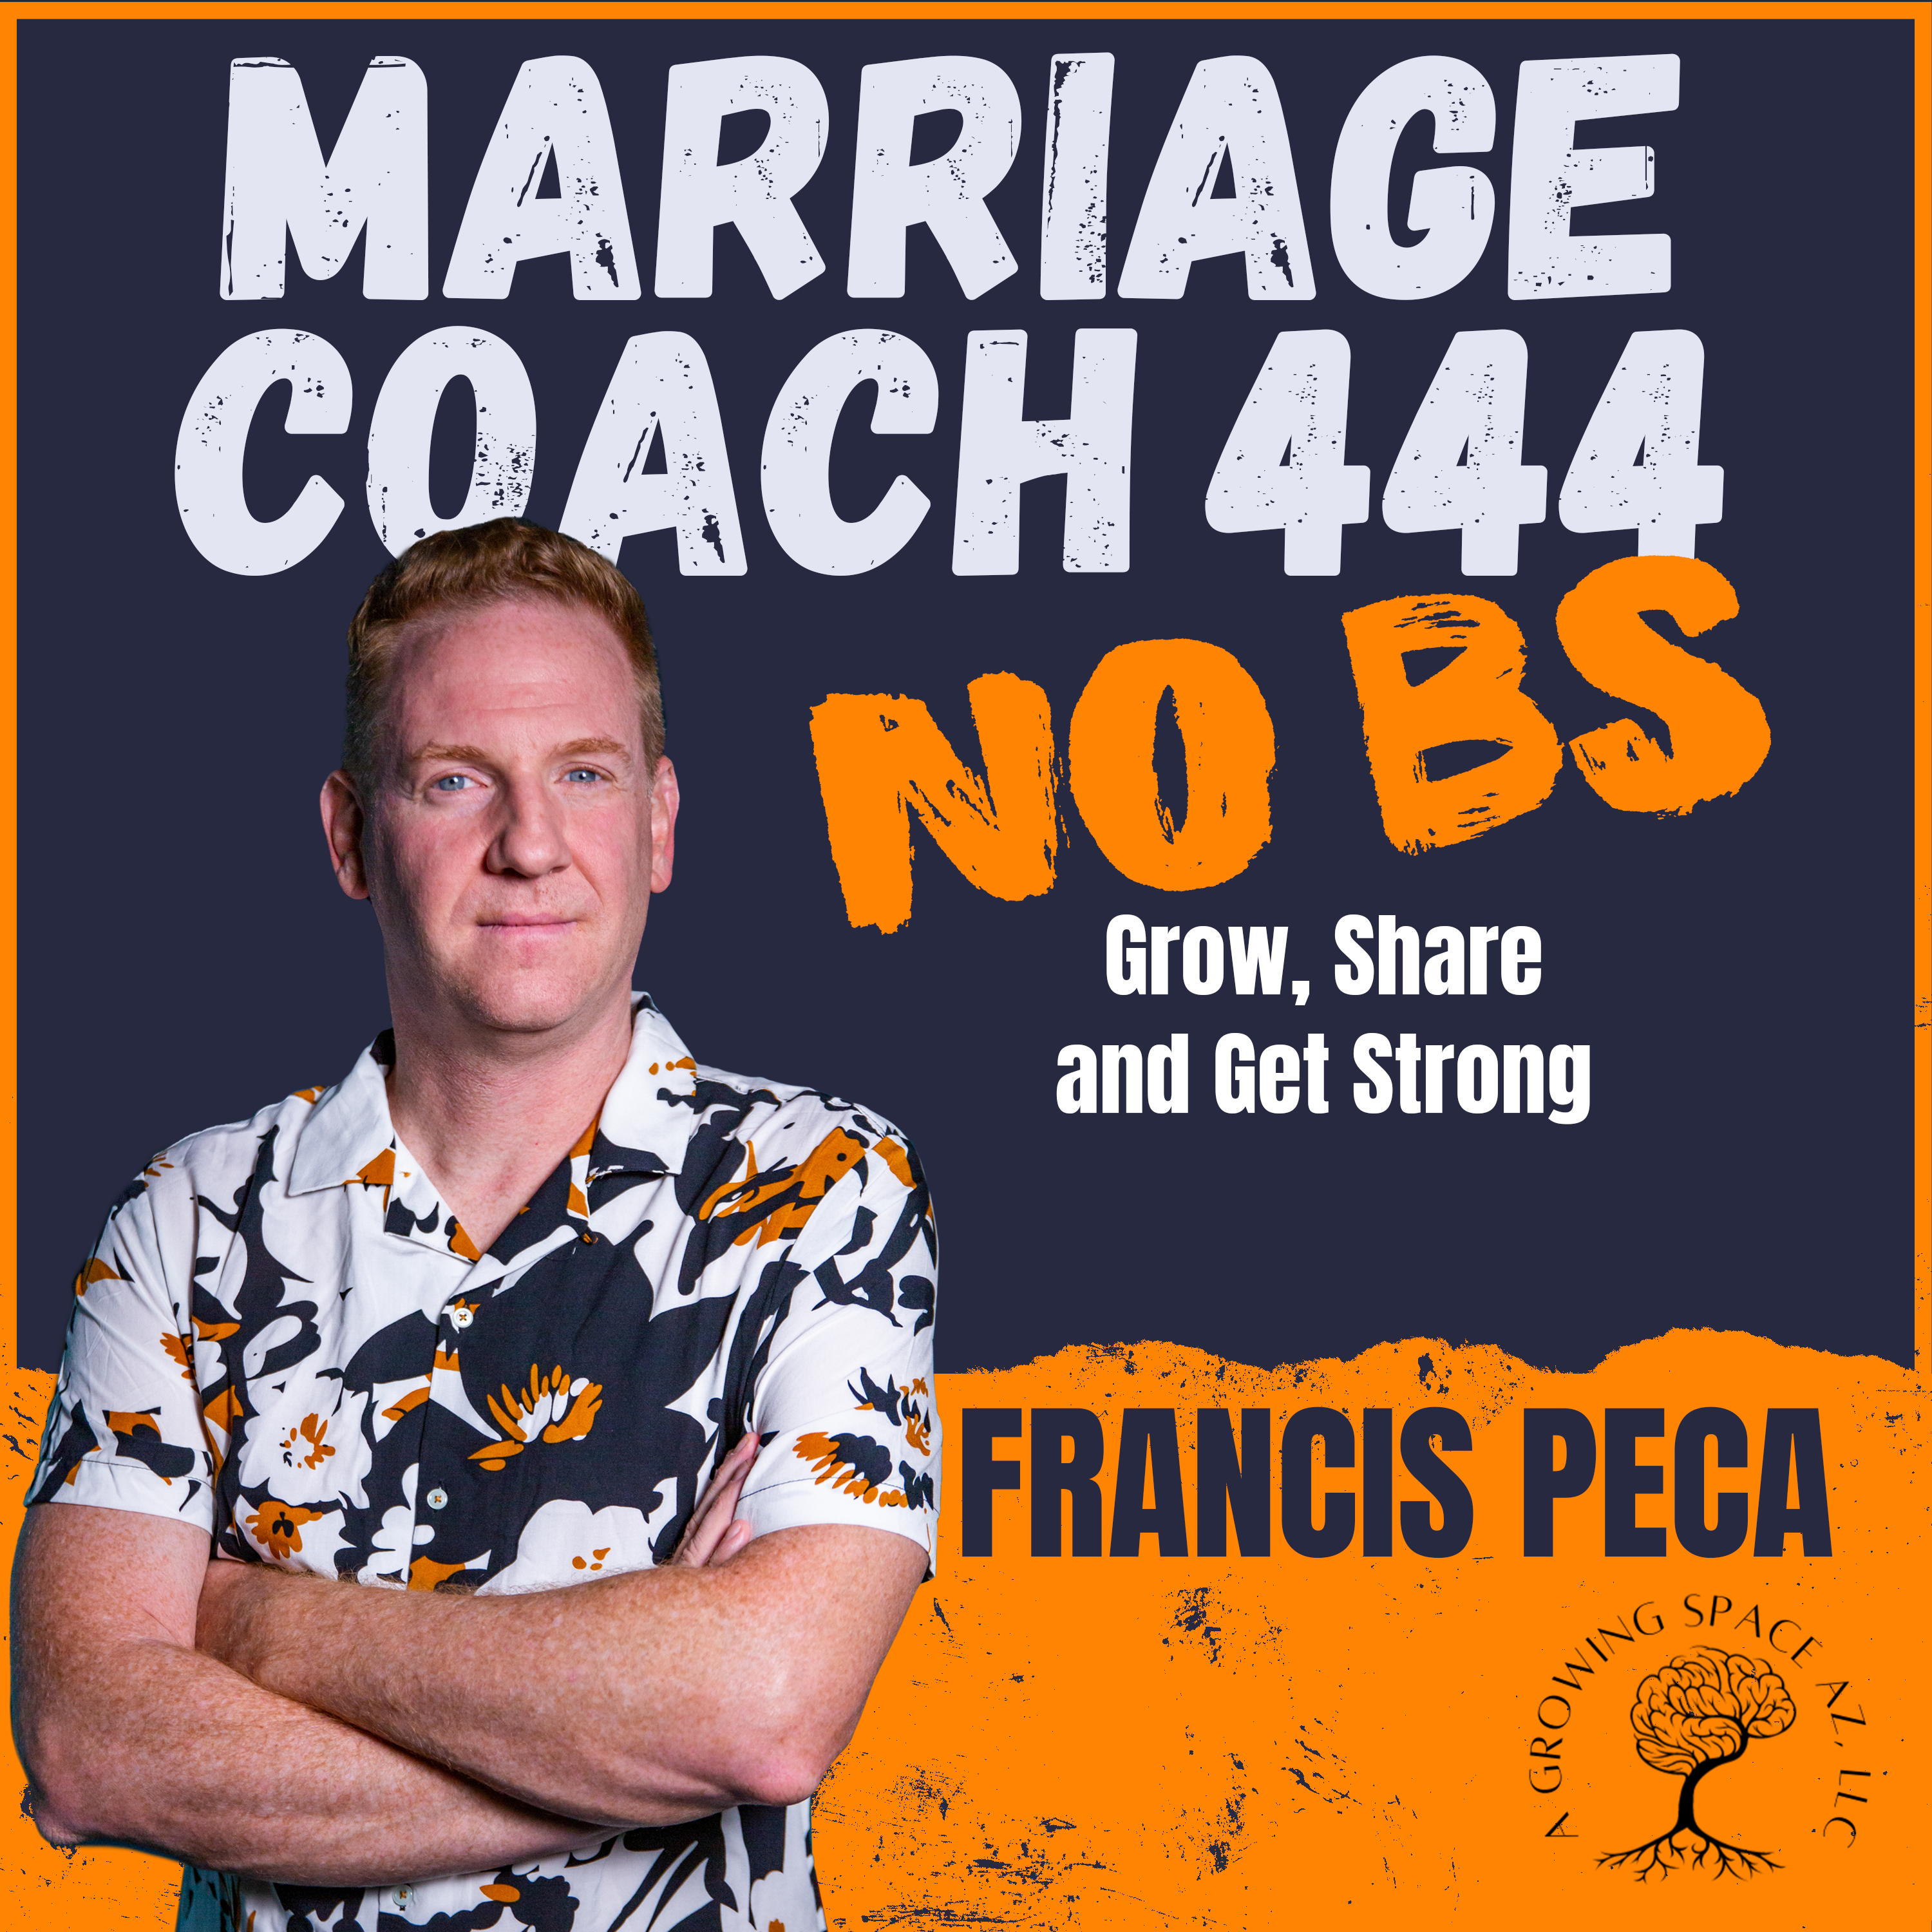 Marriage Coach 444 (No BS)